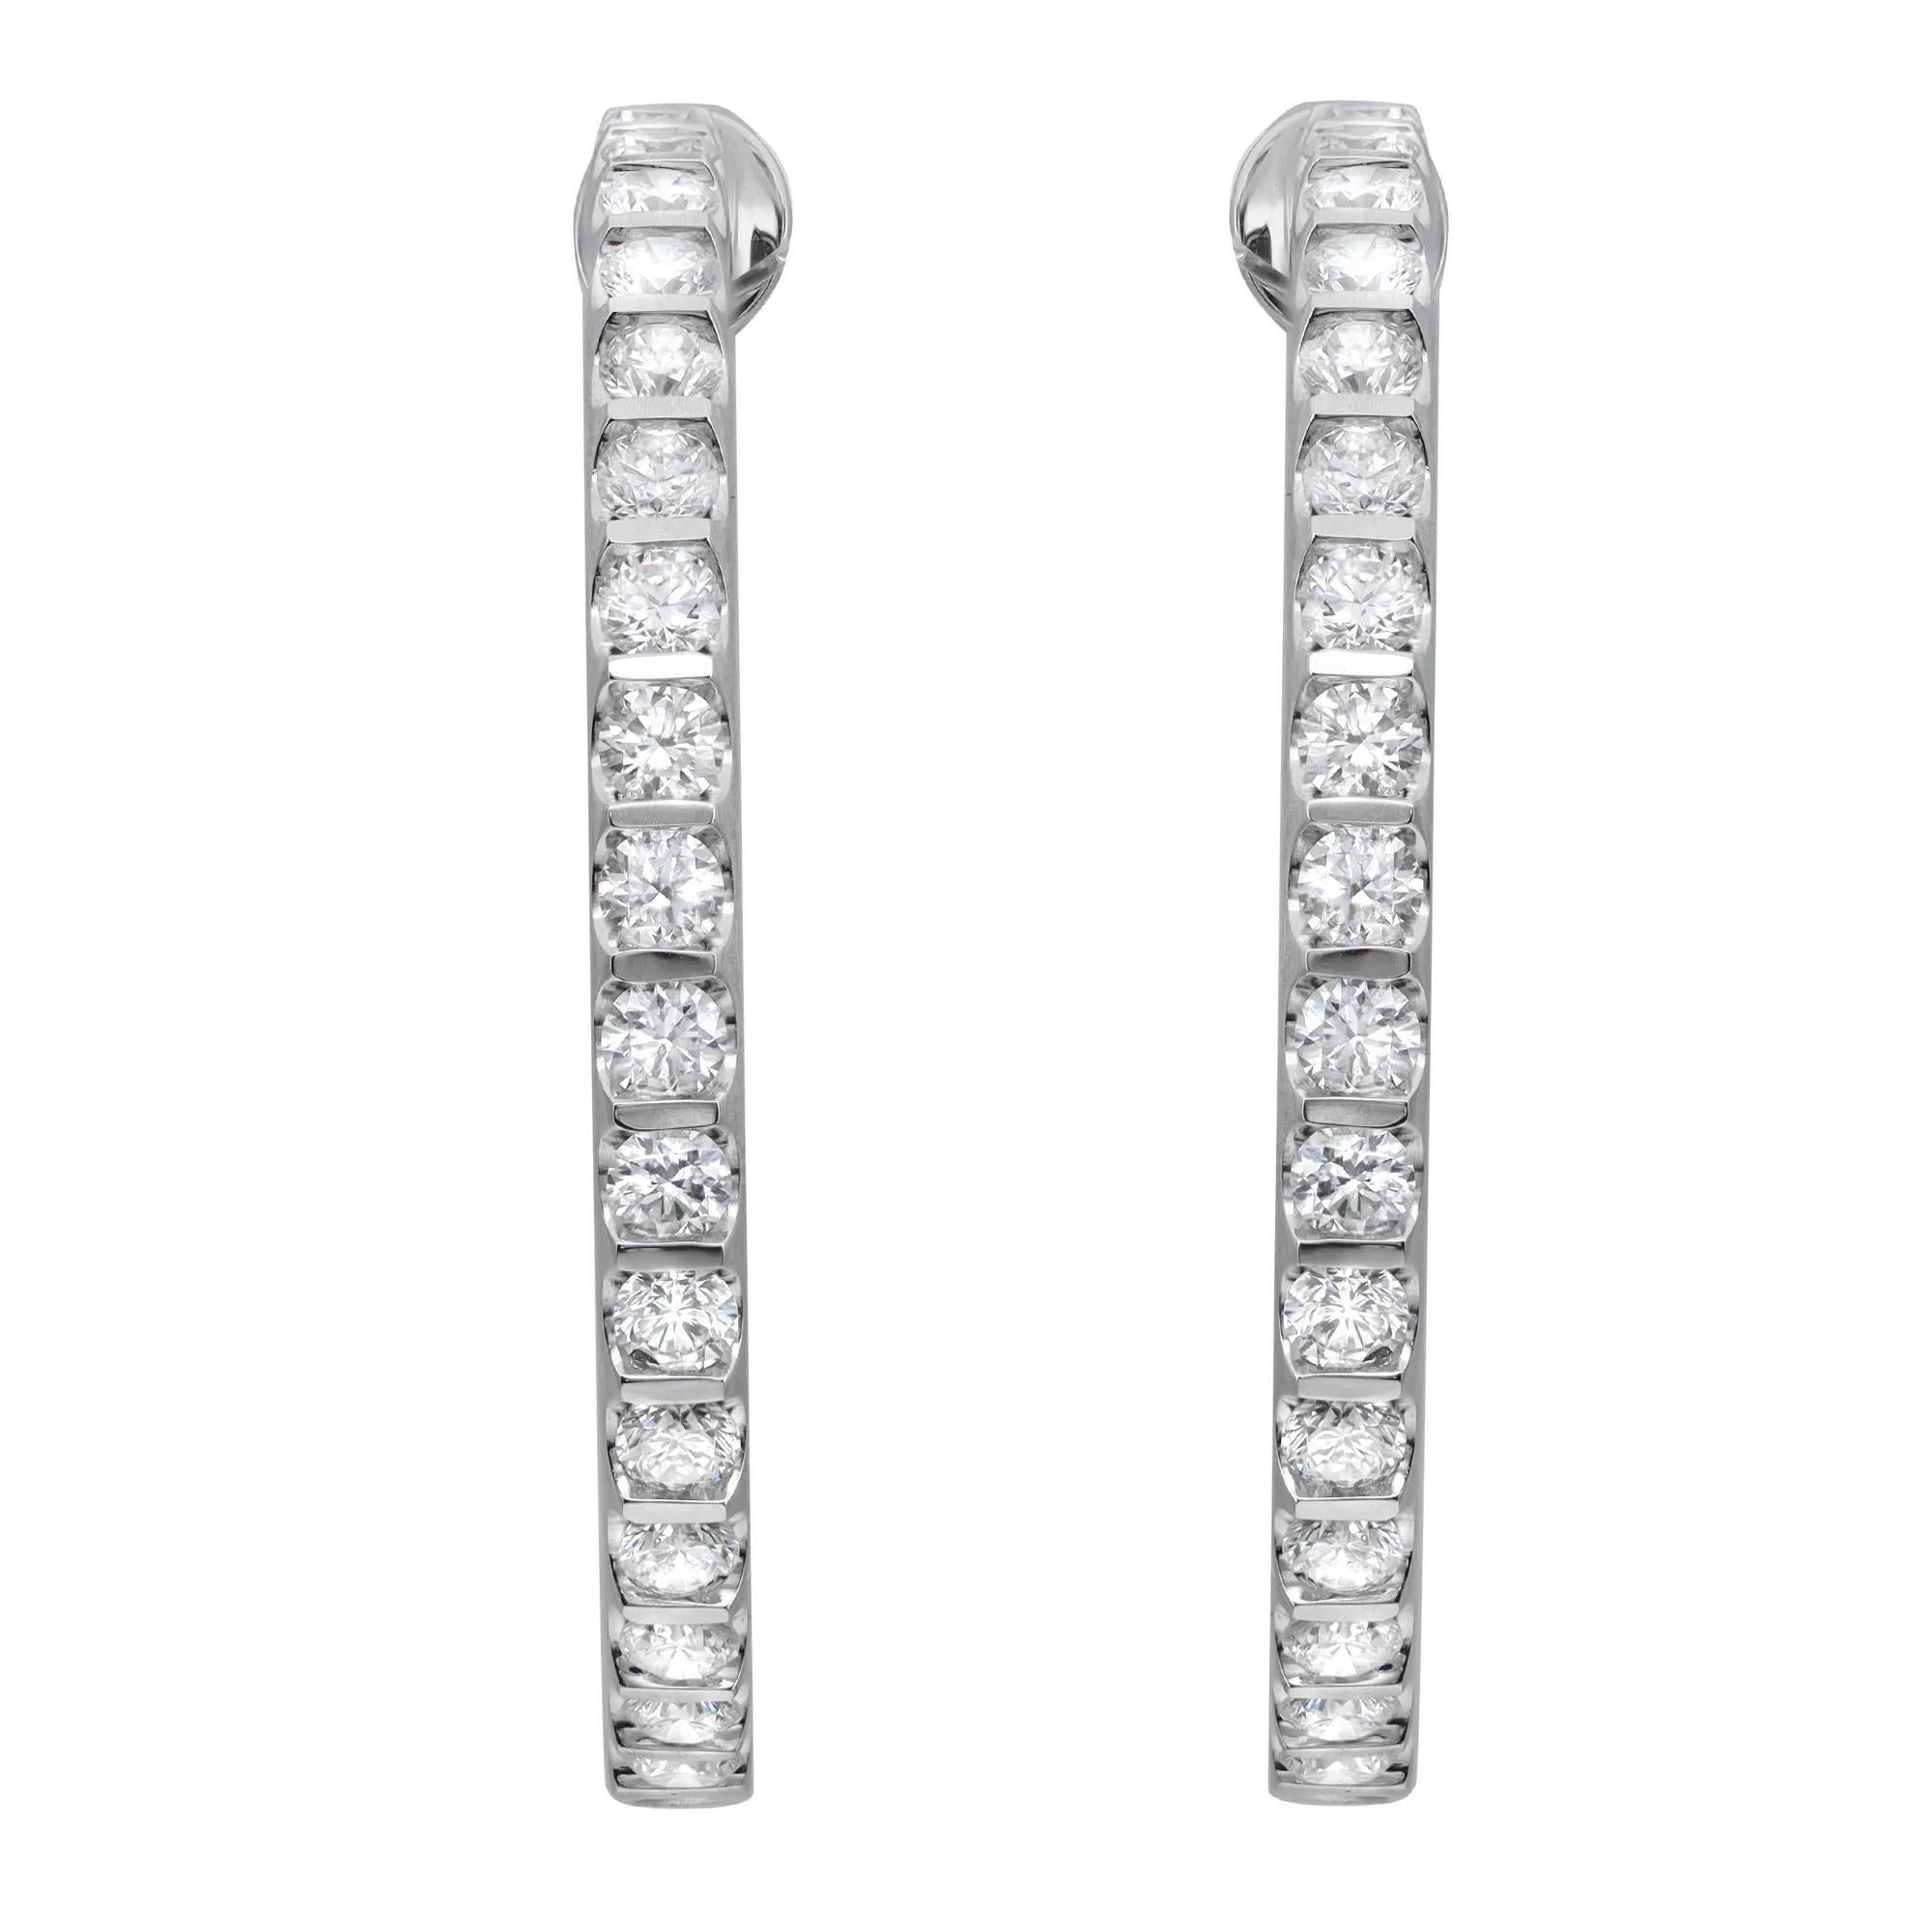 Diese schillernden Diamant-Ohrringe mit innenliegendem Bügel werten jedes Outfit auf. Aus glänzendem 18-karätigem Weißgold gefertigt, funkelt jeder Ohrring aus jedem Blickwinkel mit einer Reihe glitzernder runder Diamanten im Brillantschliff entlang